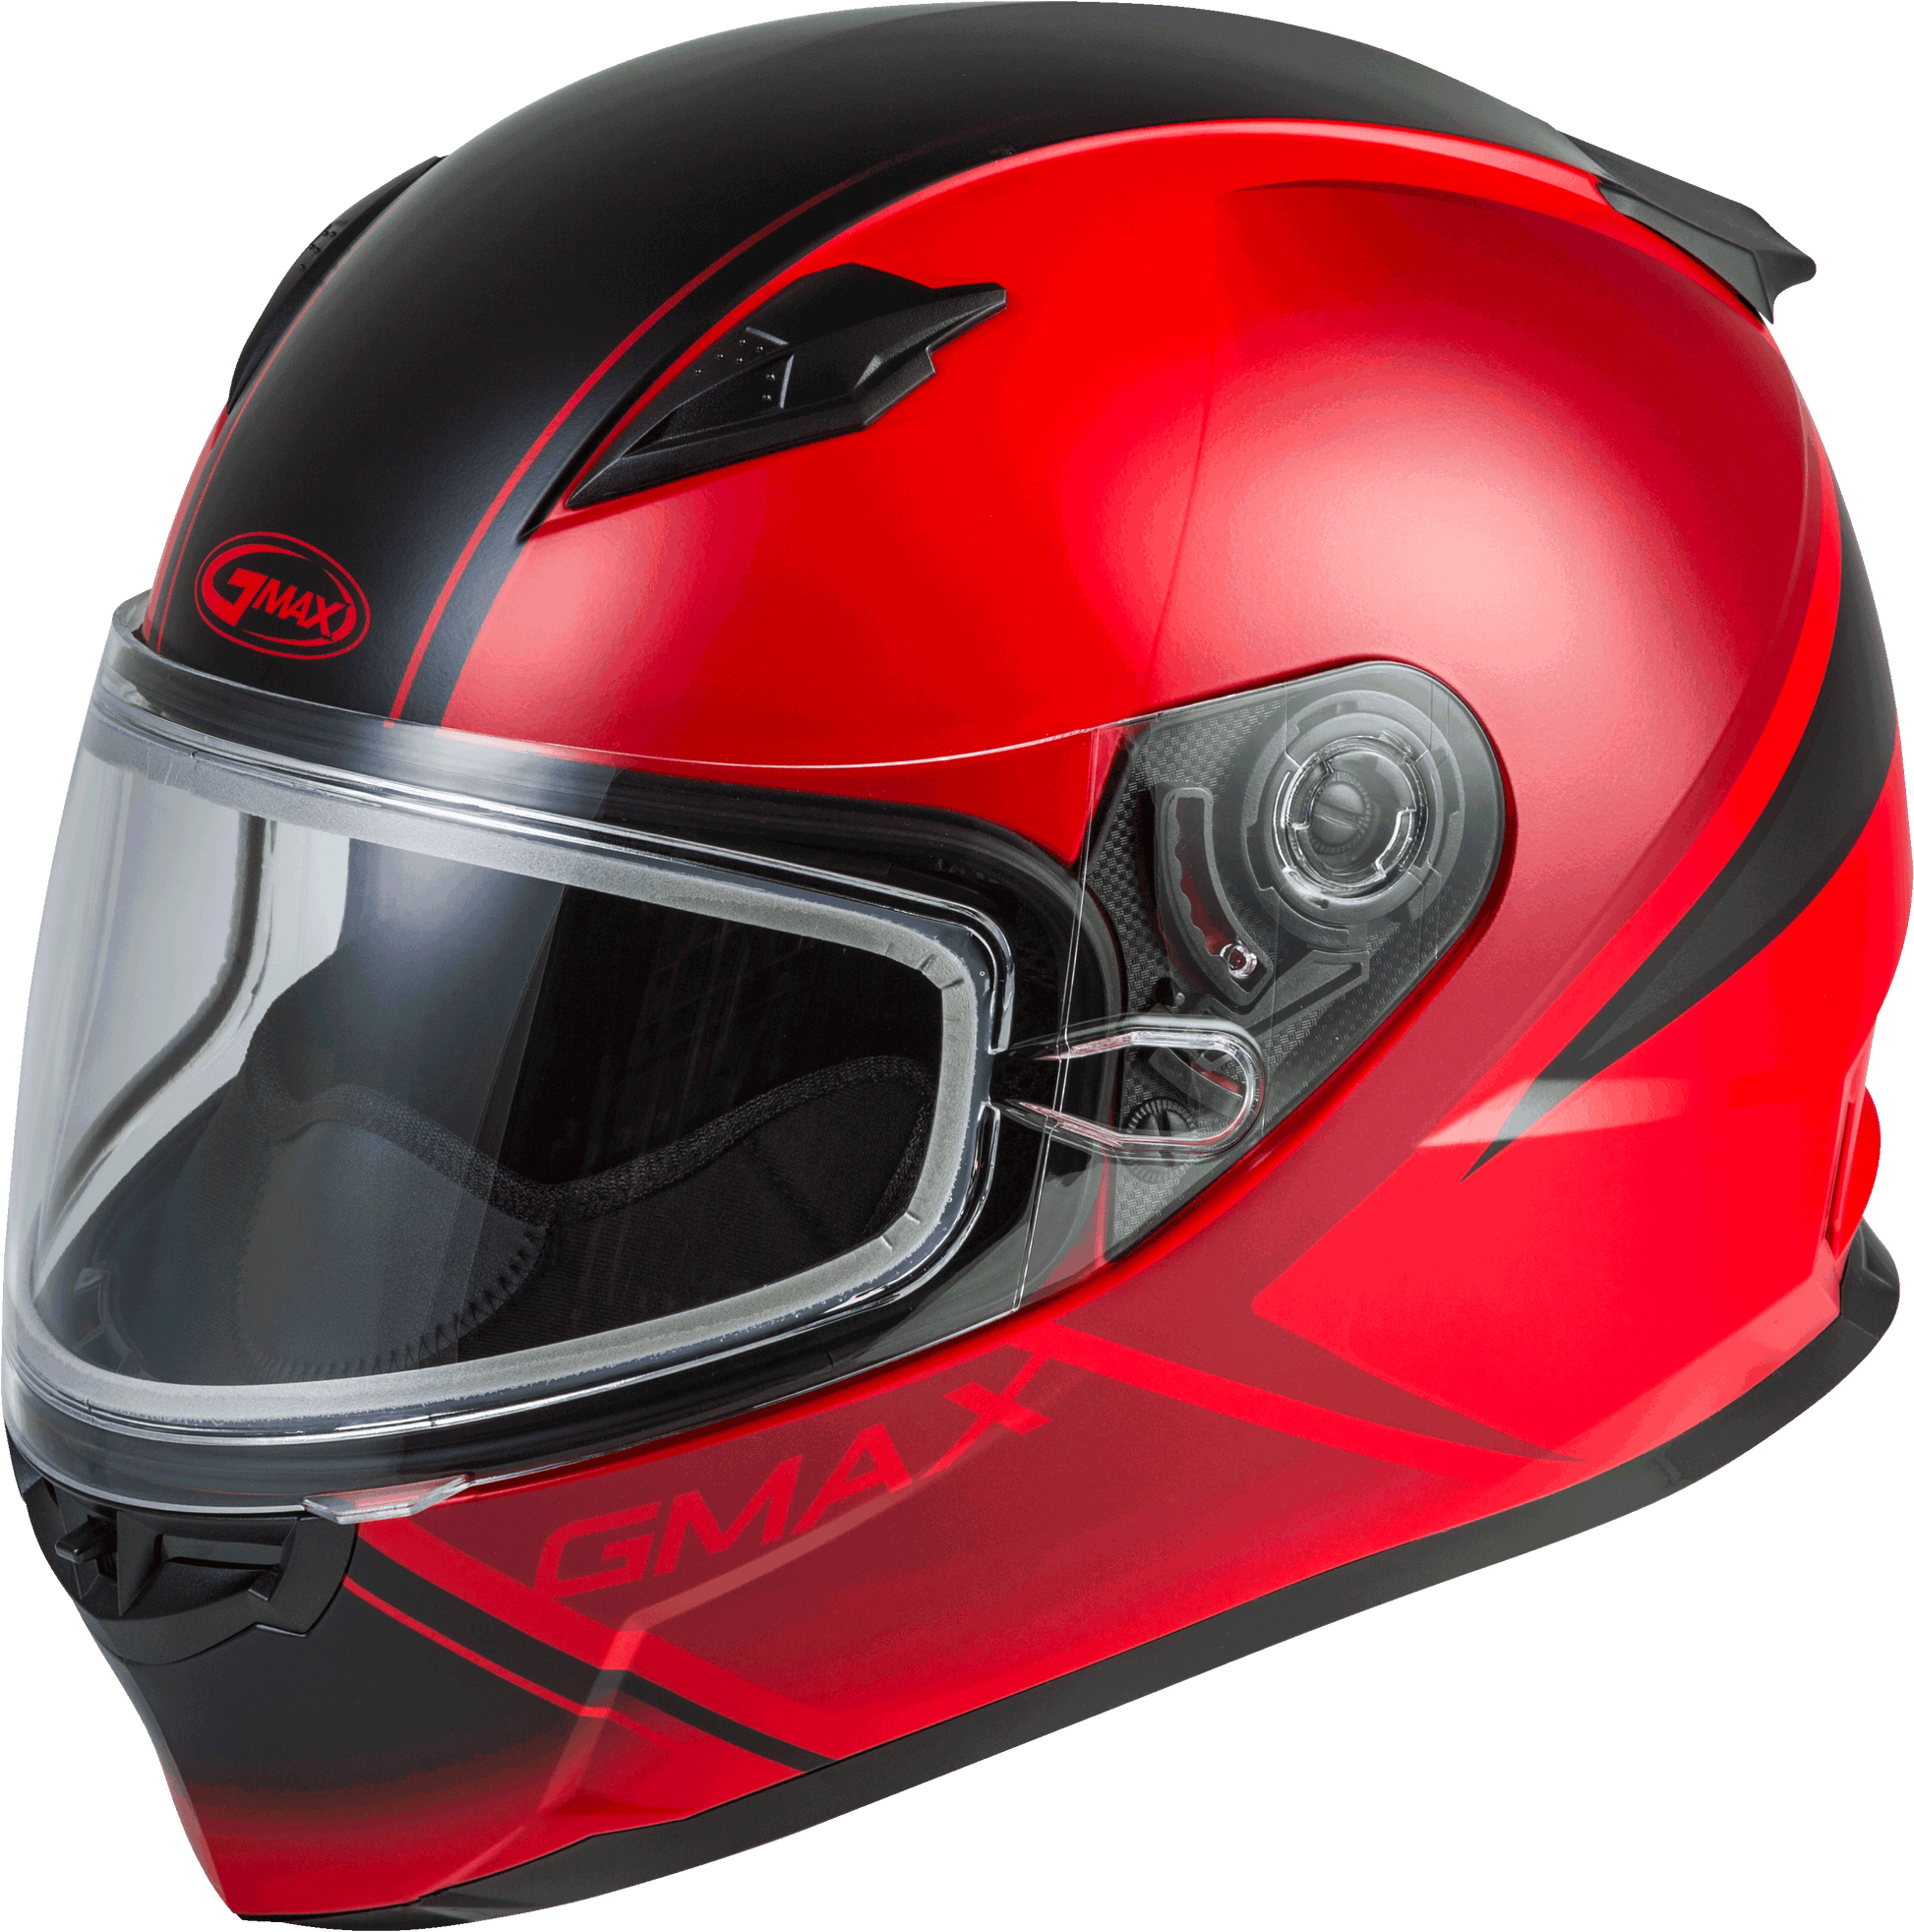 Gmax 72-6331 FF-49S 'Hail' Full-Face Snow Helmet Matte Red/Black